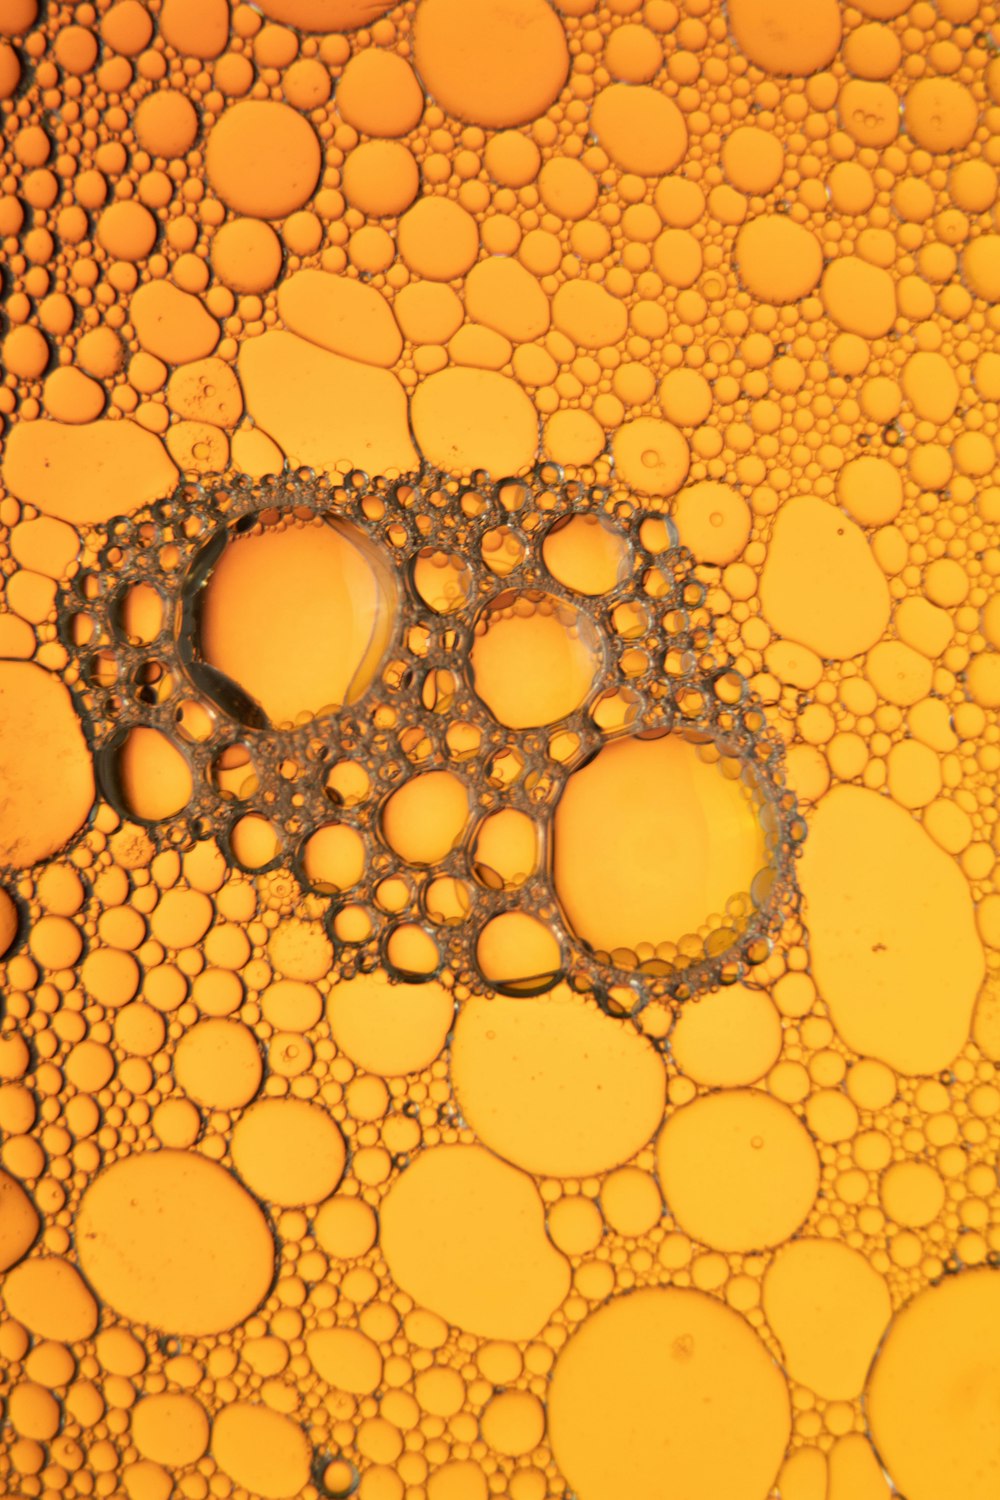 goccioline d'acqua su superficie gialla